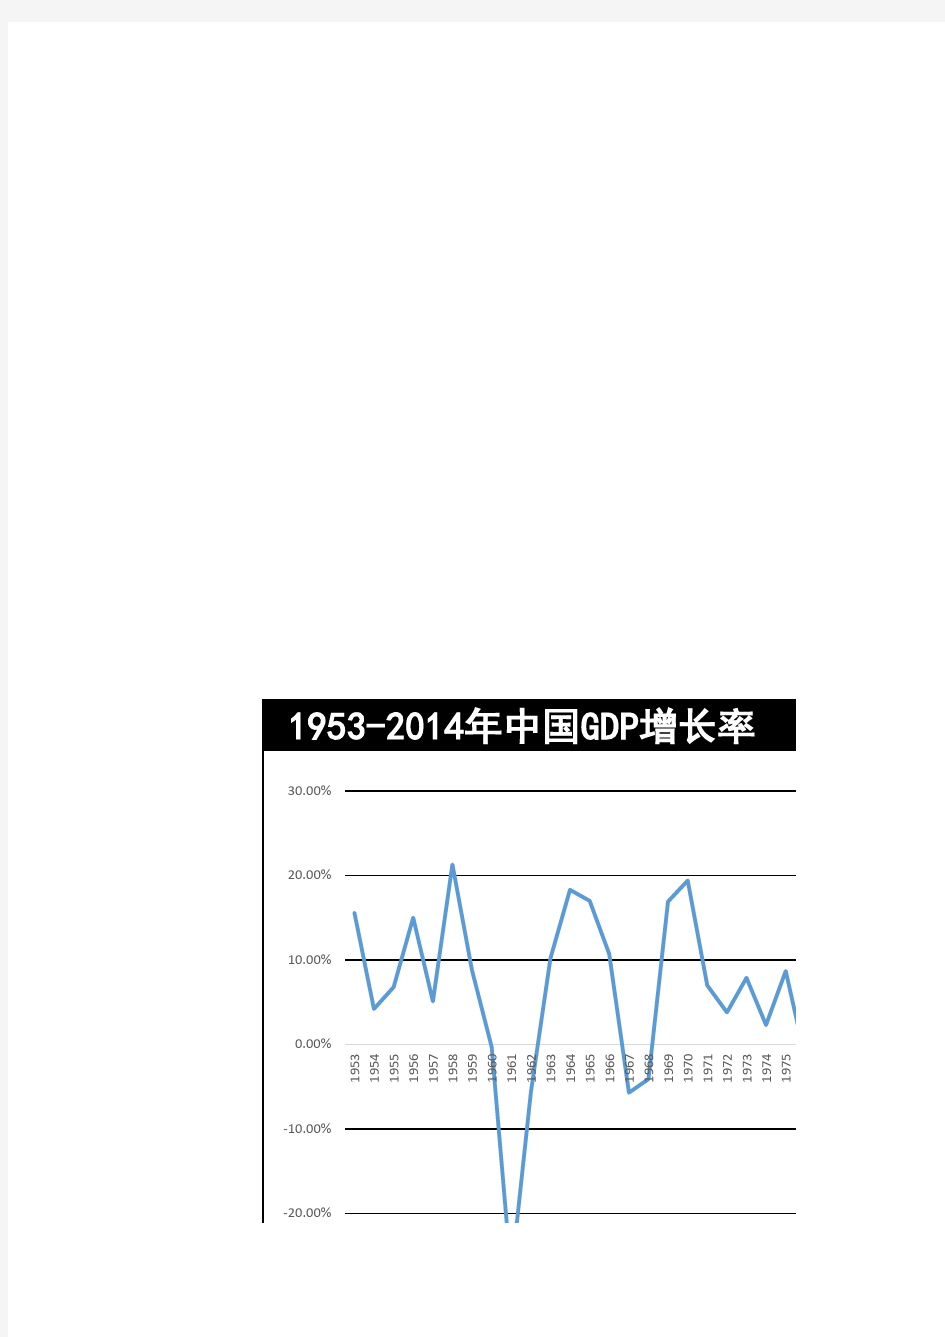 中国历年经济增长率(GDP增长率)